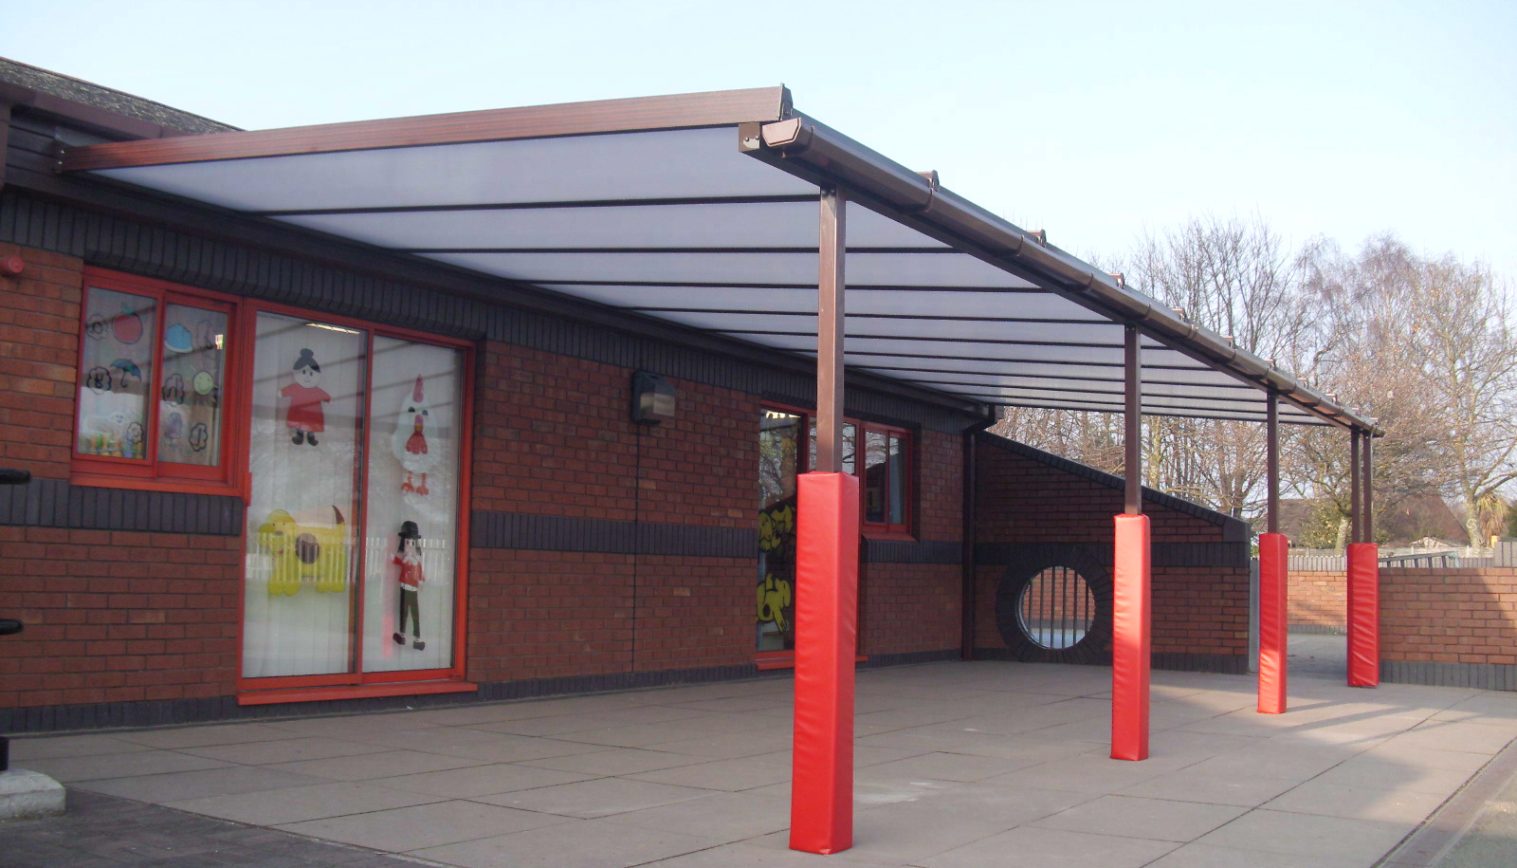 Ysgol Plas Coch County Primary School – Wall Mounted Canopy – Third Installation